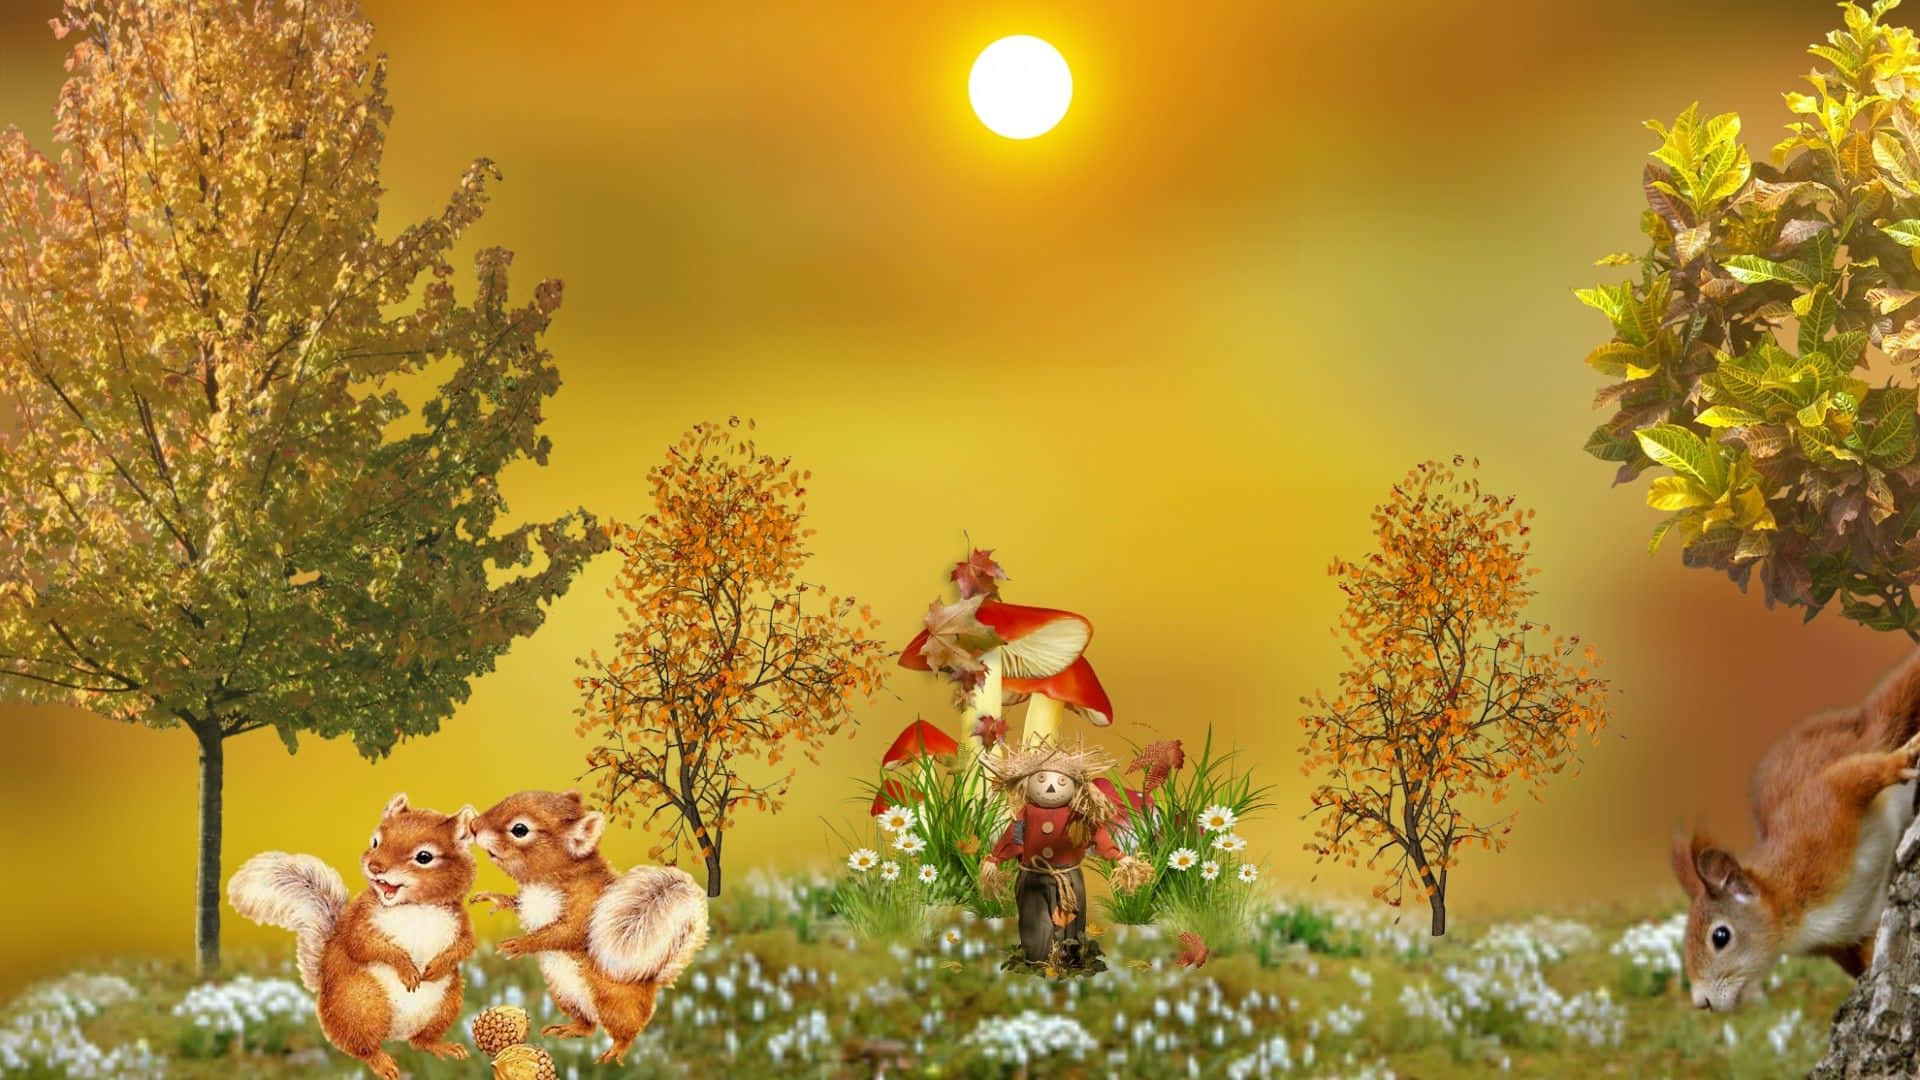 Kuschelnsie Sich In Die Gemütlichen Farben Des Herbstes Mit Diesem Süßen Desktop-hintergrundbild Ein. Wallpaper